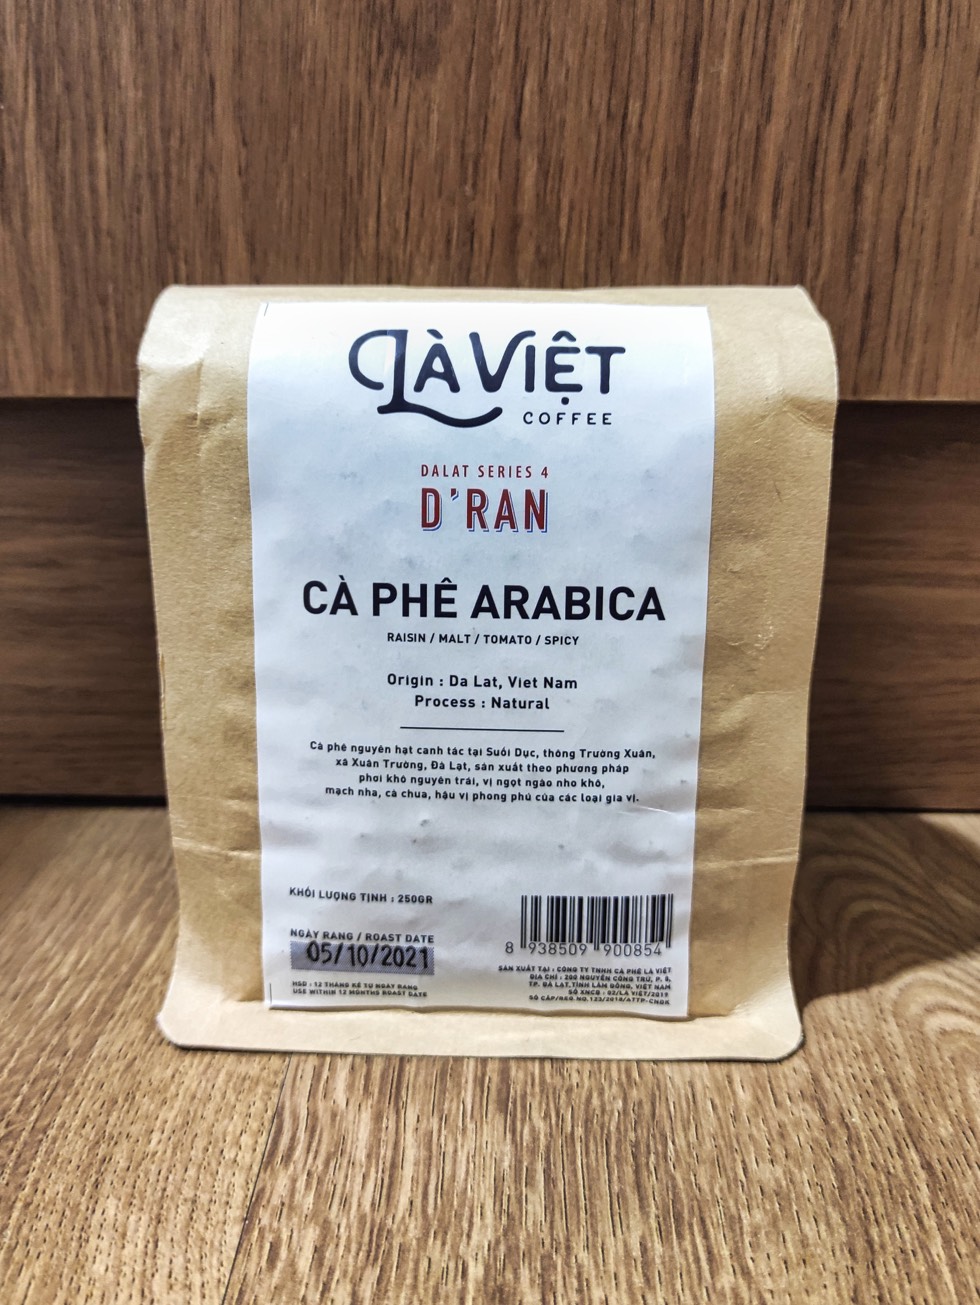 La Viet Coffee Dalat Series 4 D'Ran